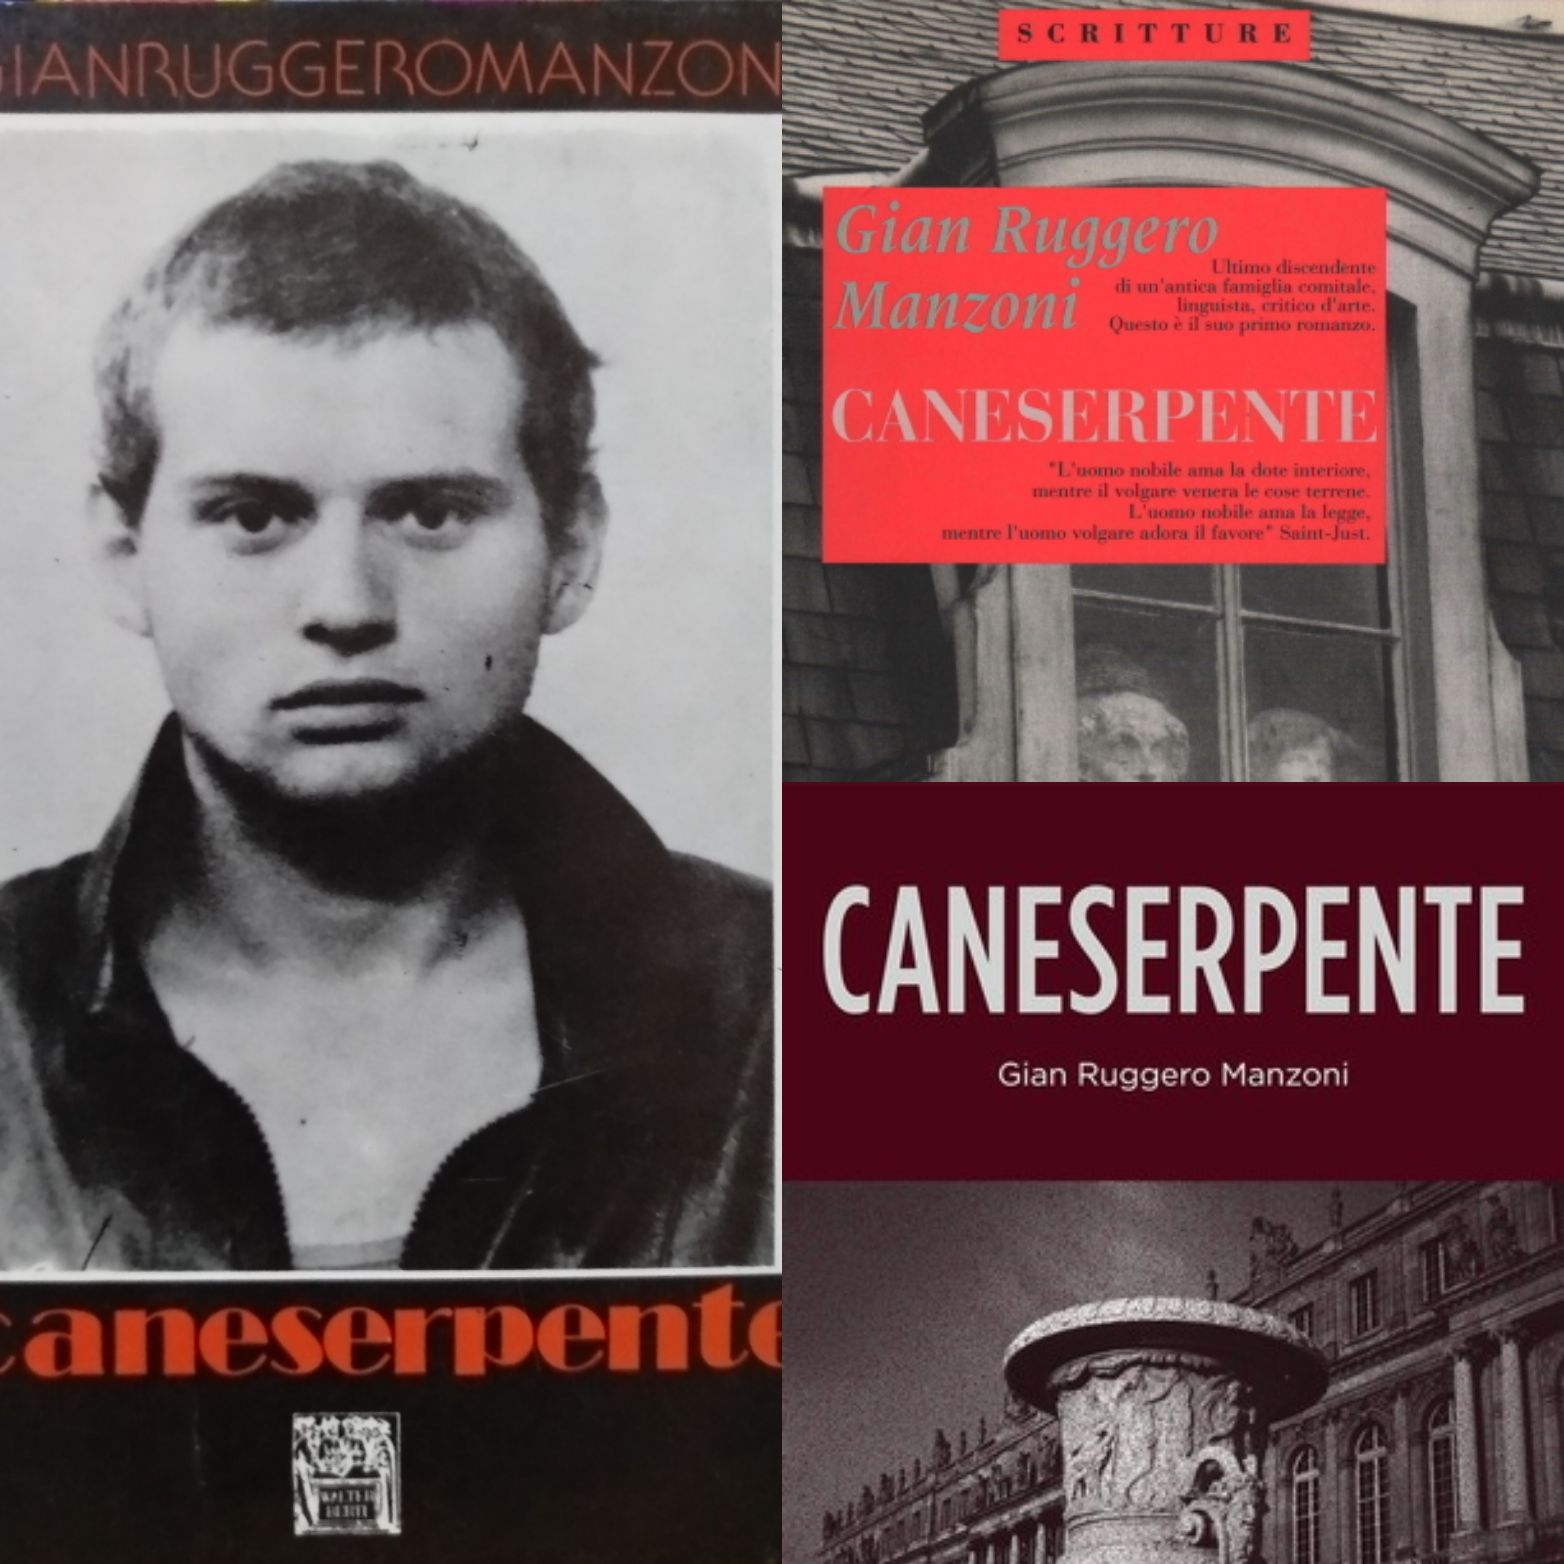 “Caneserpente” di Gian Ruggero Manzoni: lo strano caso di due libri diversi con lo stesso titolo!